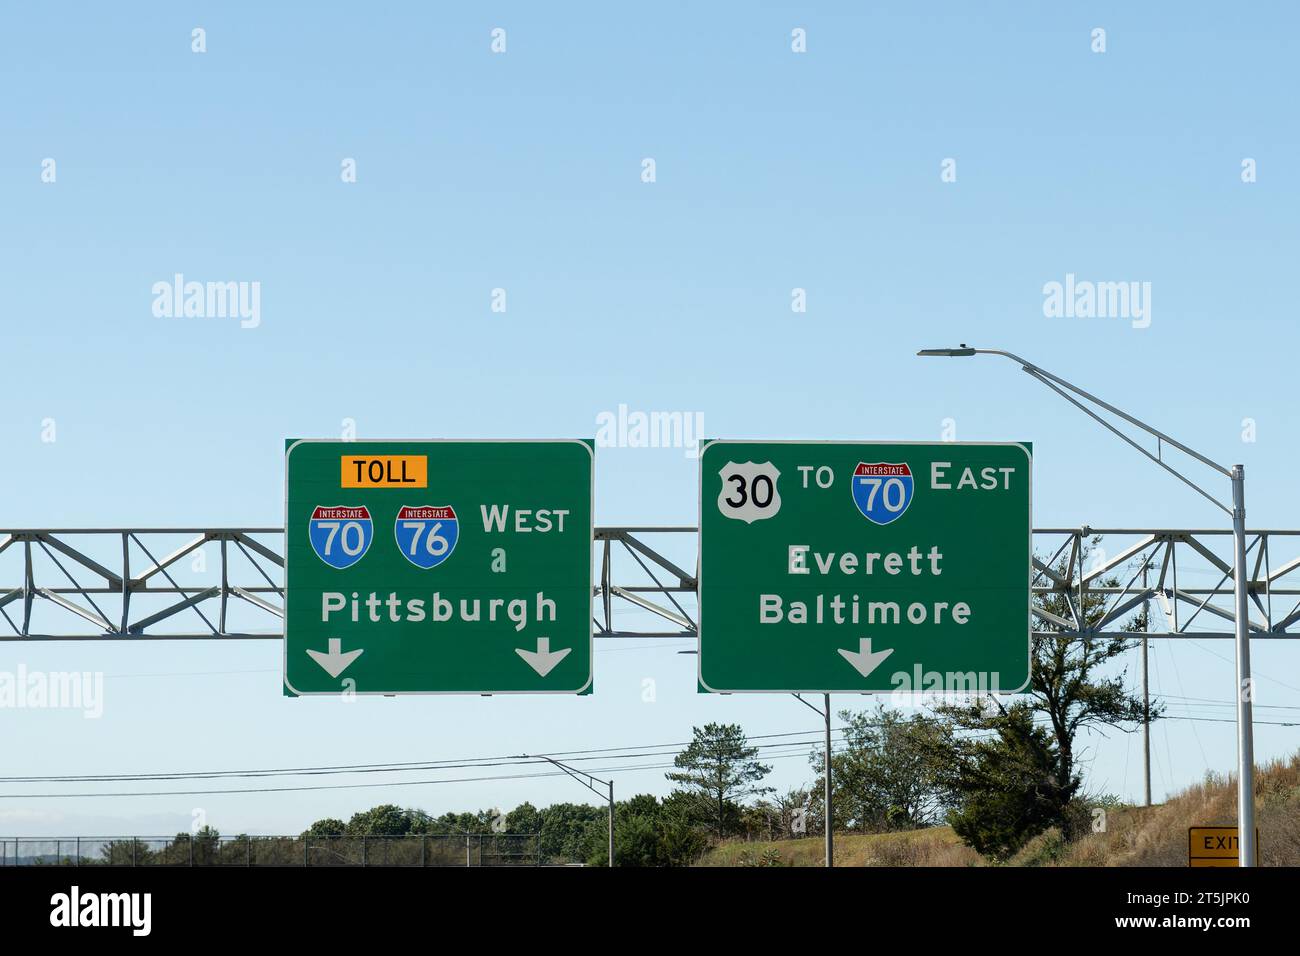 Panneaux à Breezewood, Pennsylvanie sur la I 76, Pennsylvania Turnpike, à l'intersection de la I 70 - I 76 West vers Pittsburgh et US 30 - I 70 East Towa Banque D'Images